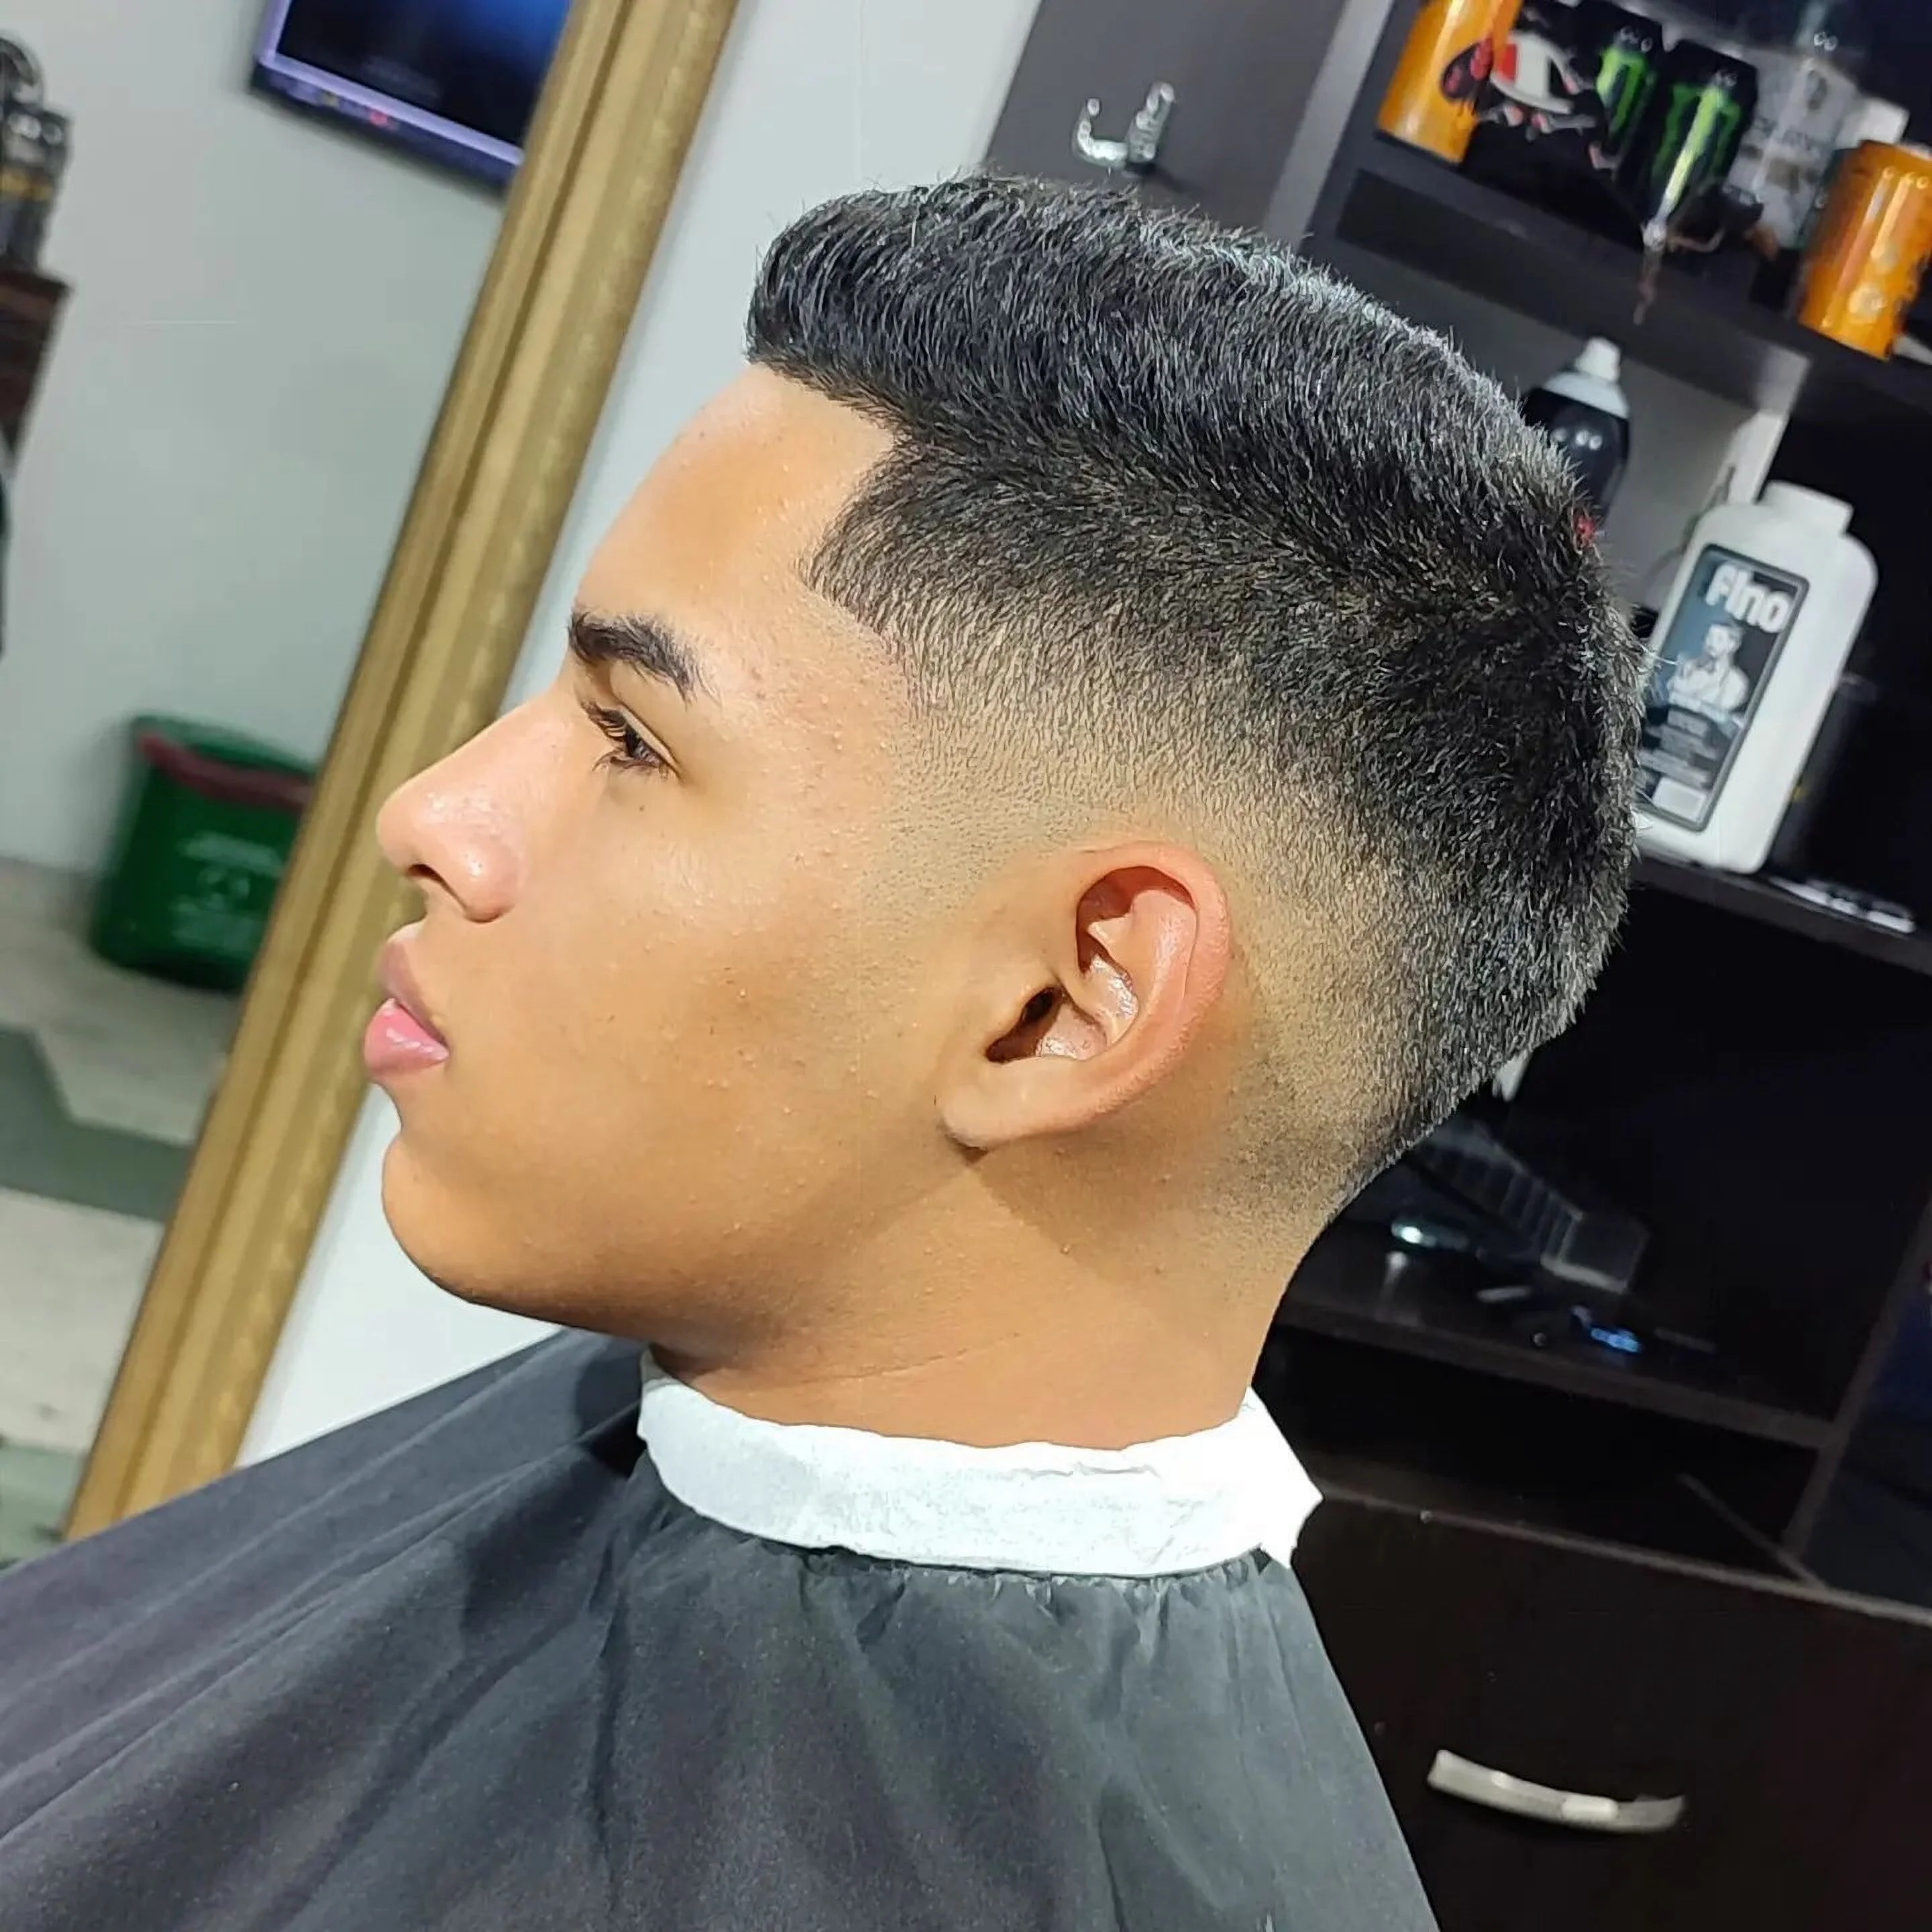 Barbería-yeico-barber-shop-7638